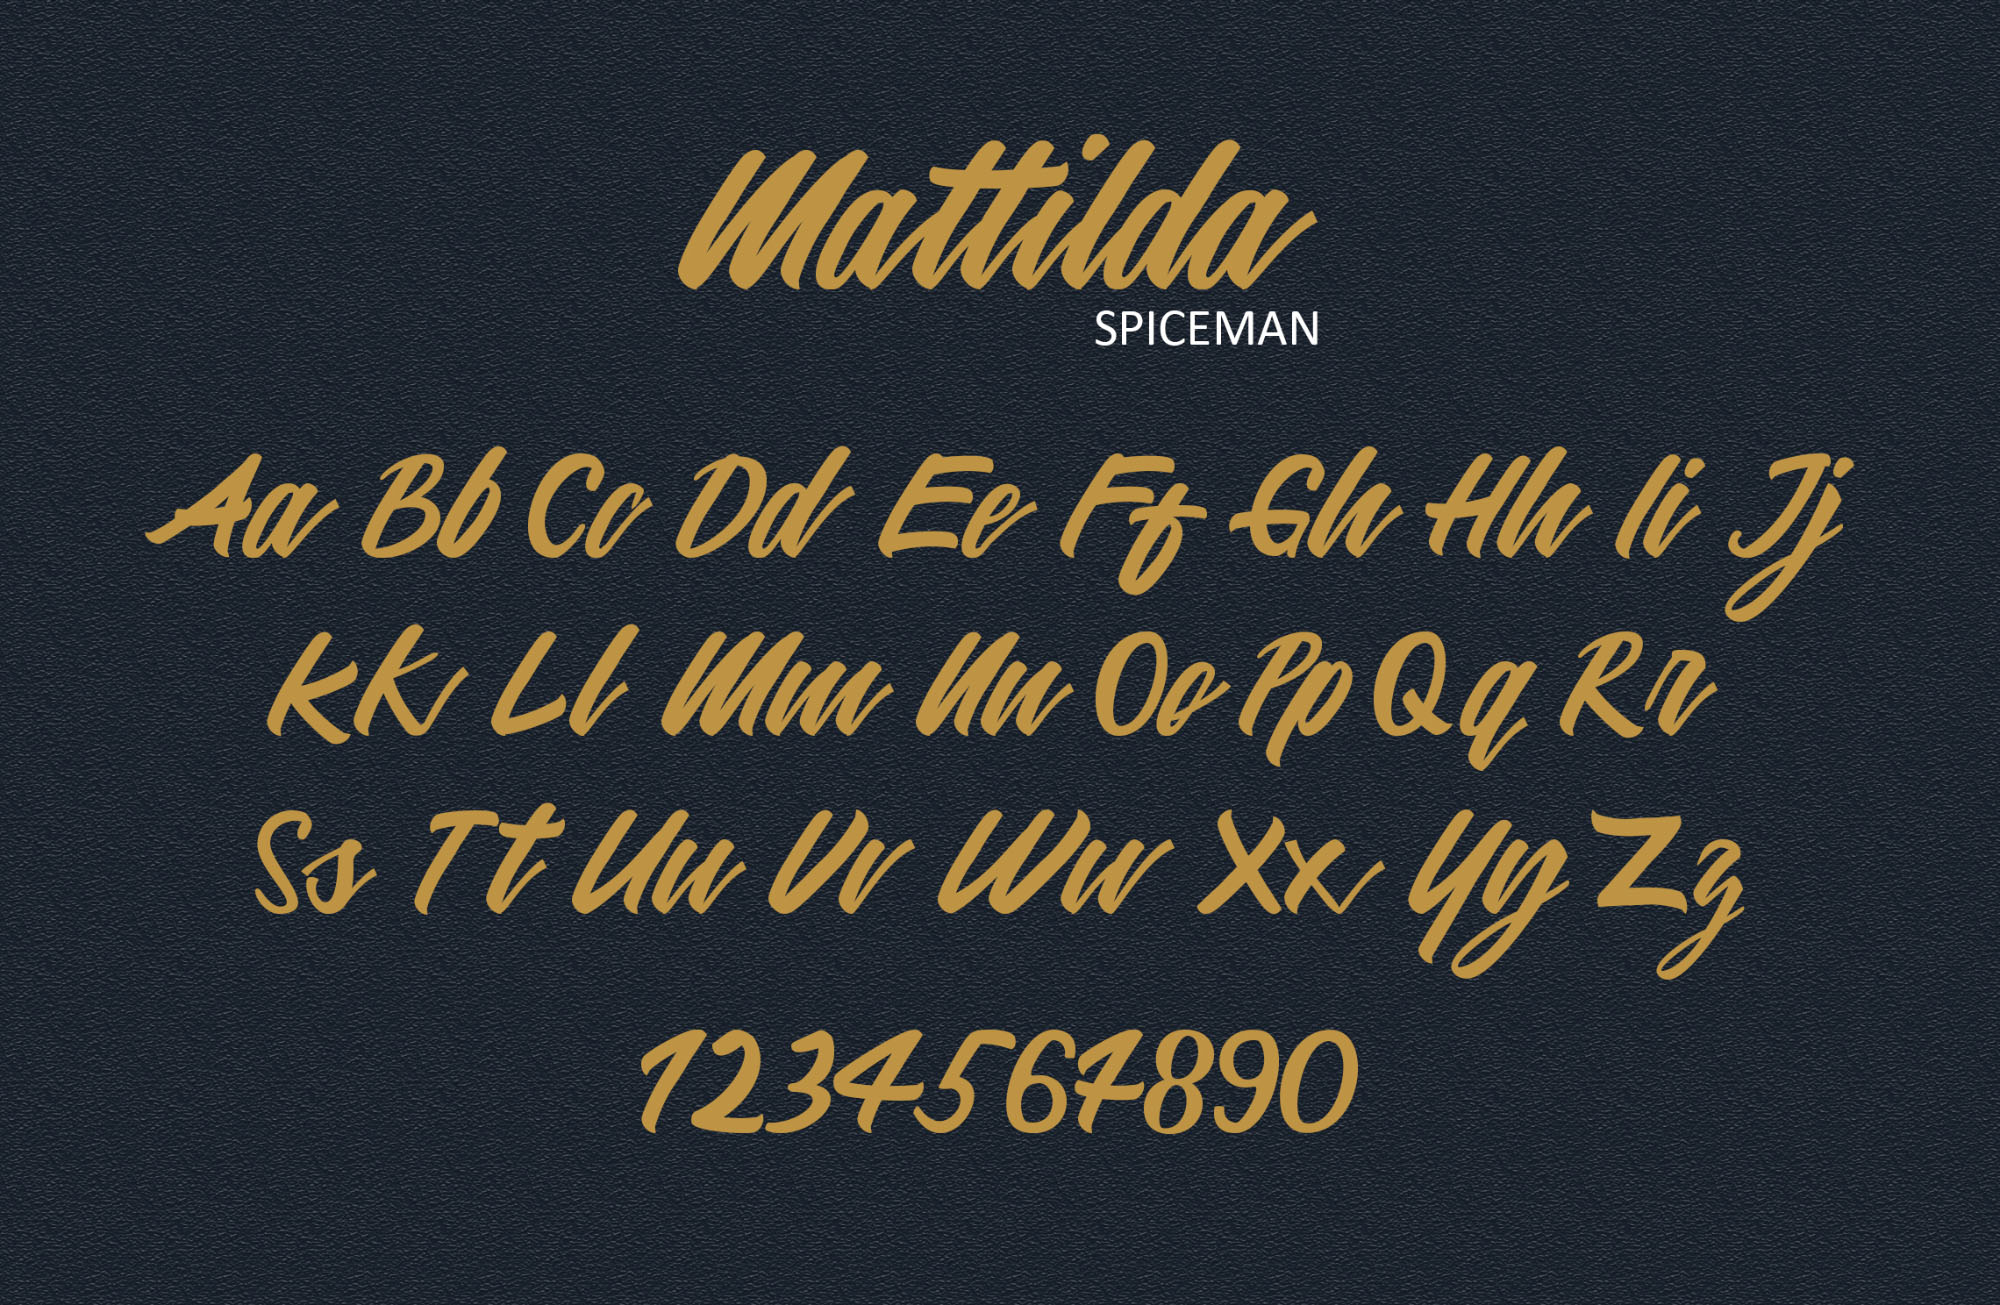 英文画笔连笔艺术字体素材库精选 Mattilda Script Font插图(2)